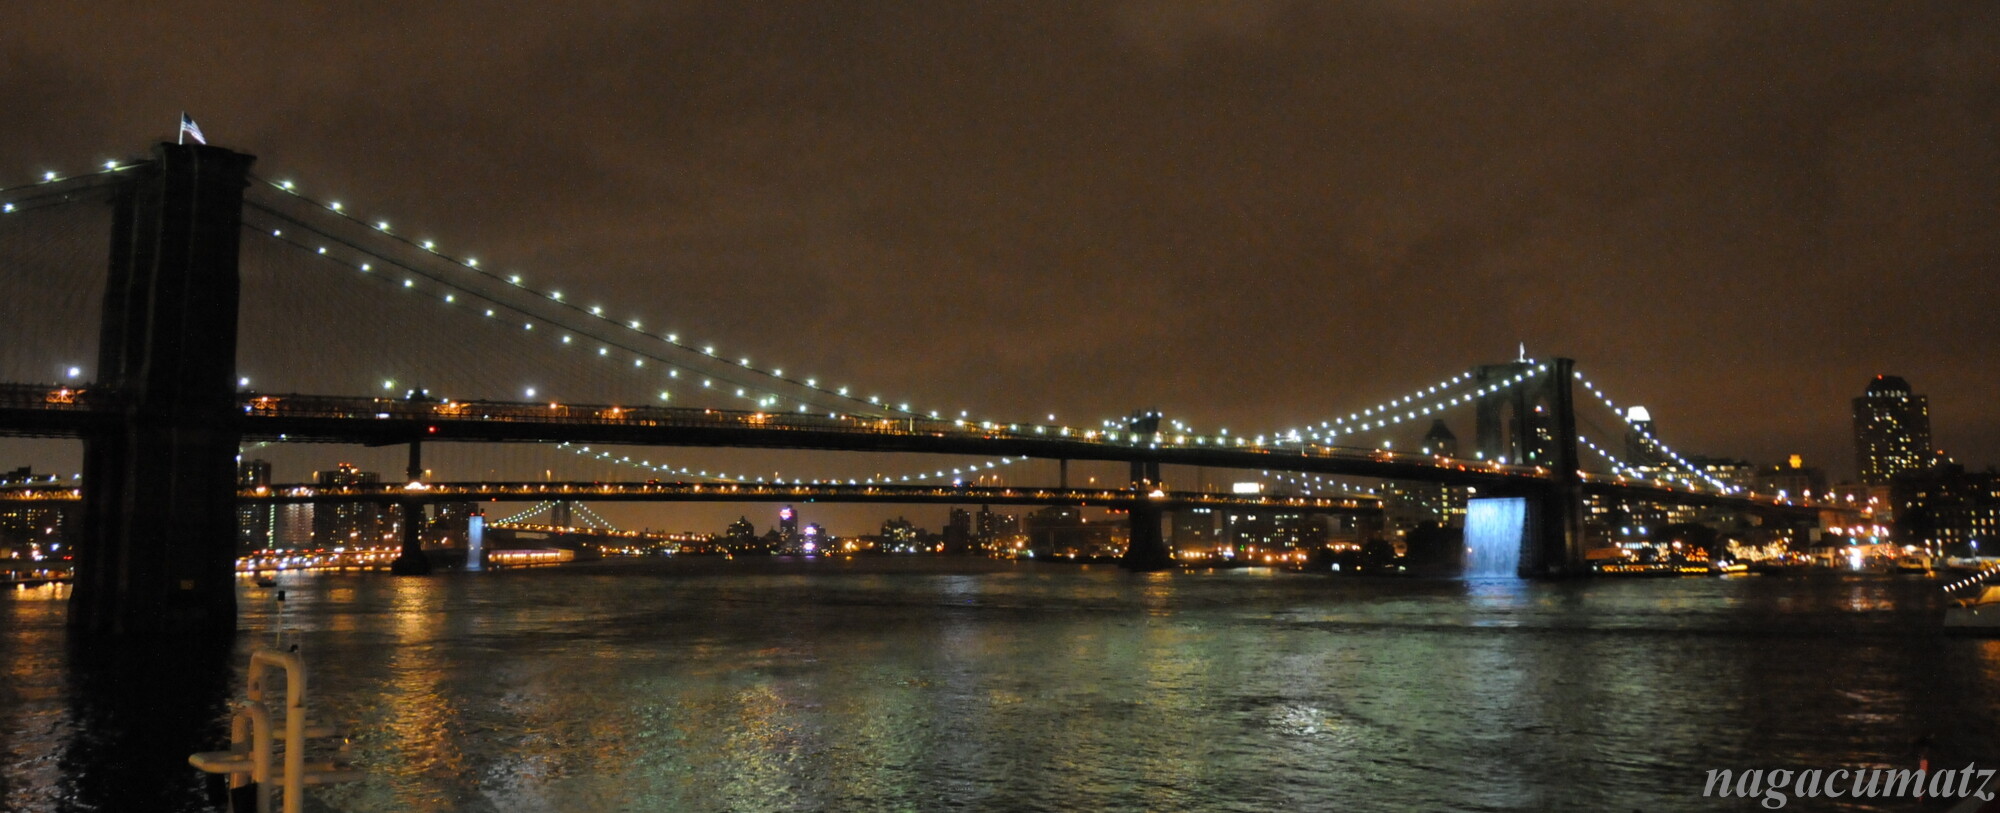 ブルックリン橋の夜景 マンハッタン側から 徒然なる All Over The World